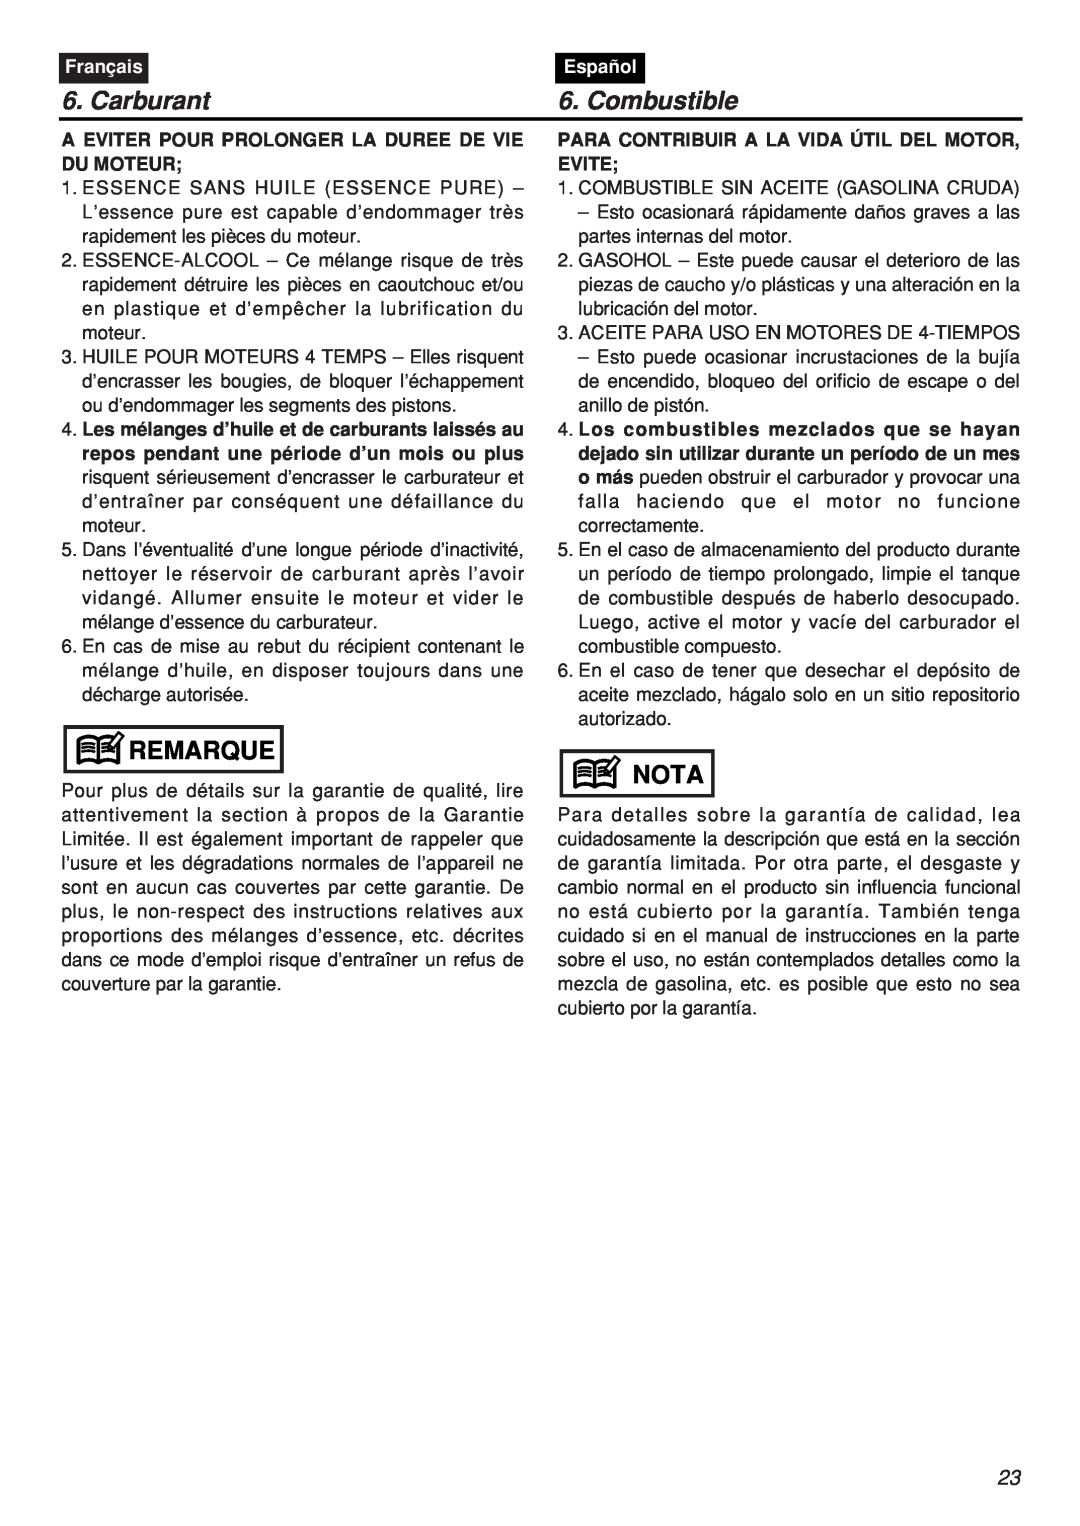 Zenoah CHTZ2401-CA, CHTZ2401L-CA manual Carburant, Combustible, Remarque, Nota, Français, Español 